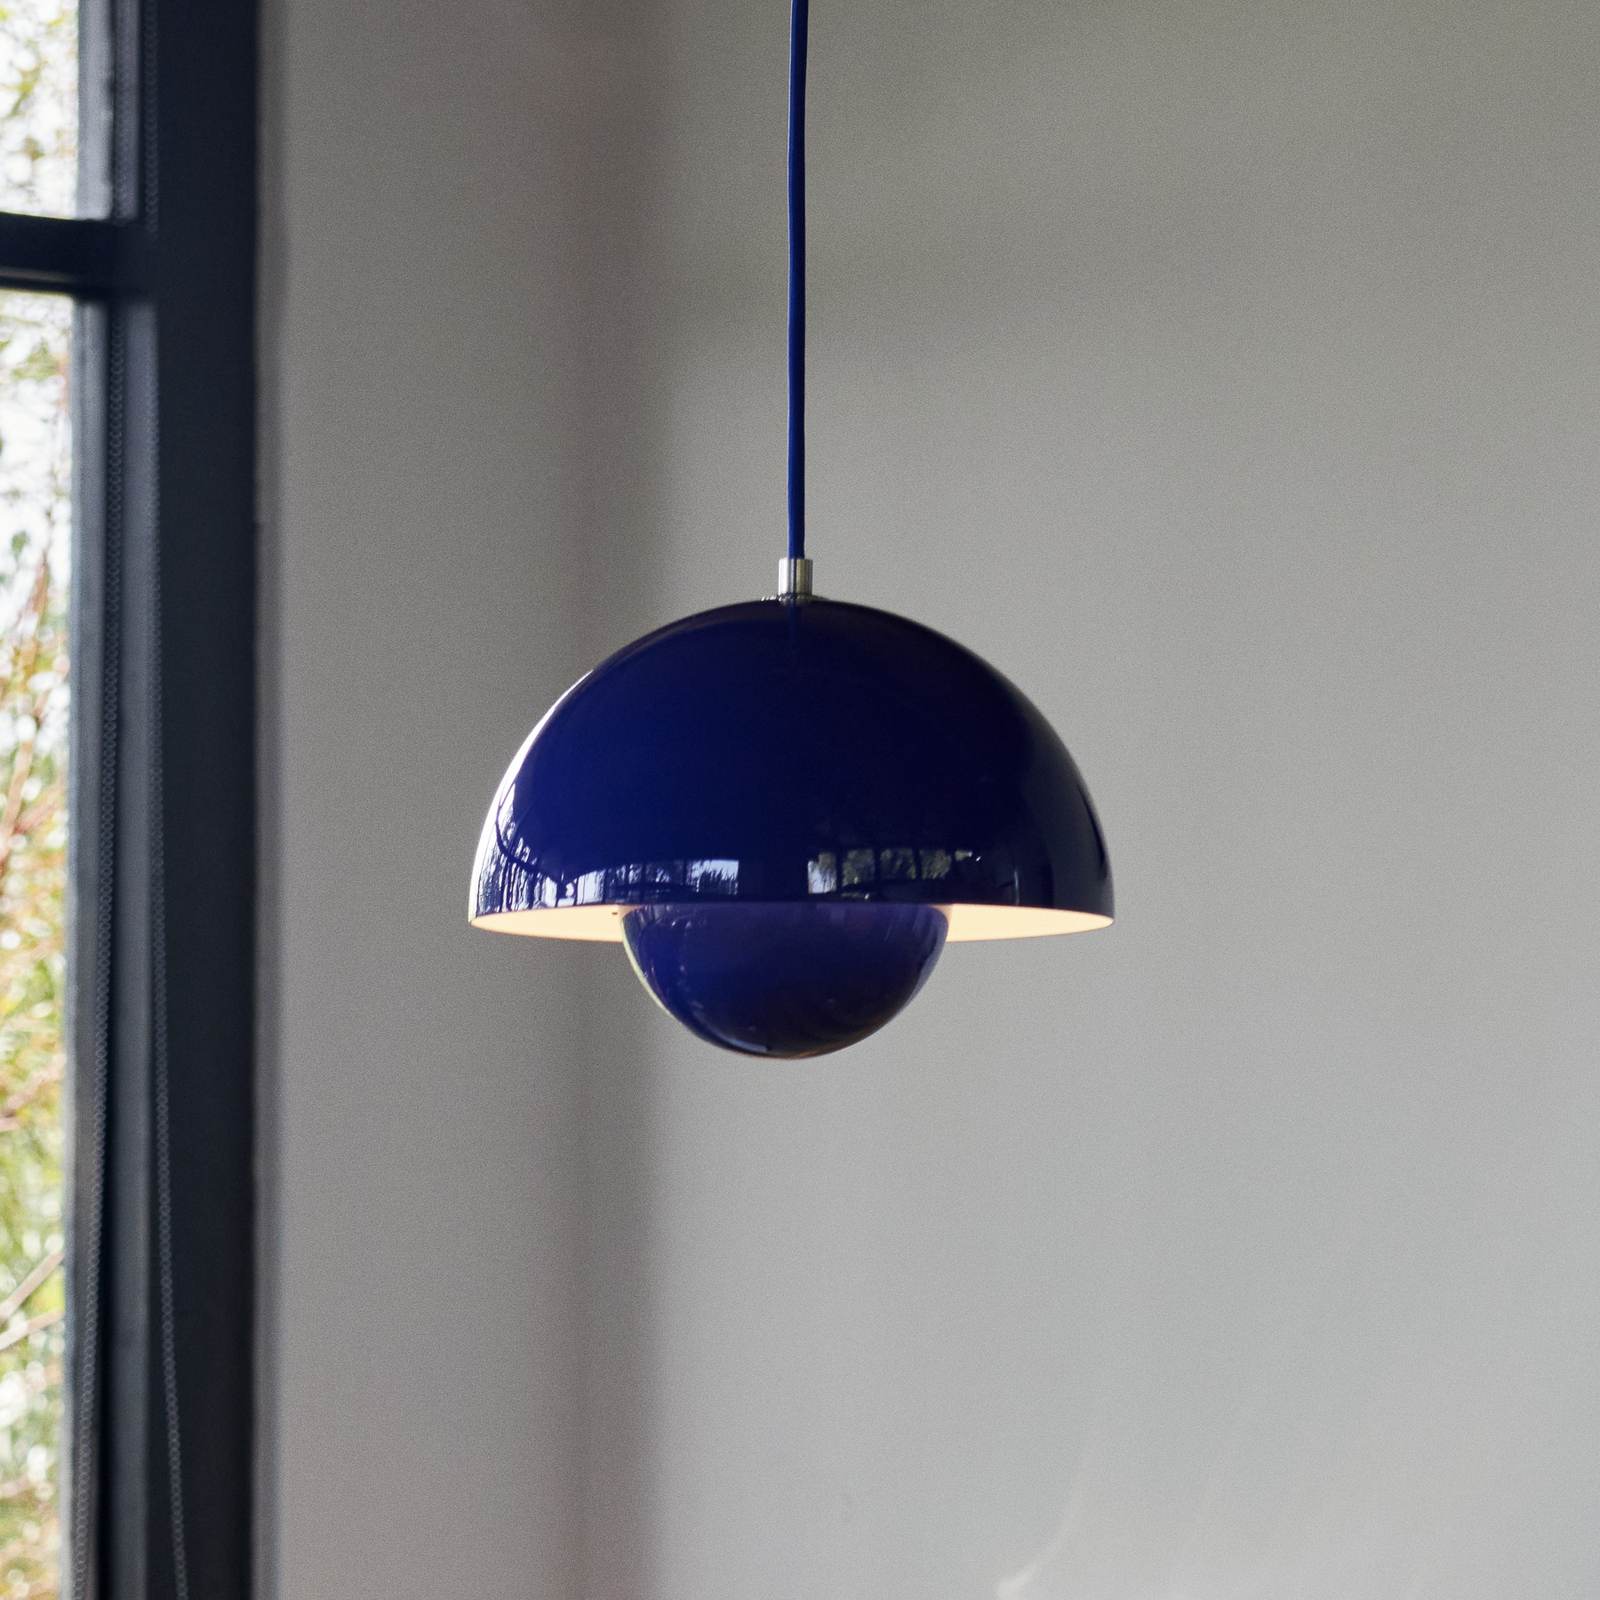 &Tradition viseća svjetiljka Flowerpot VP1, Ø 23 cm, kobaltno plava